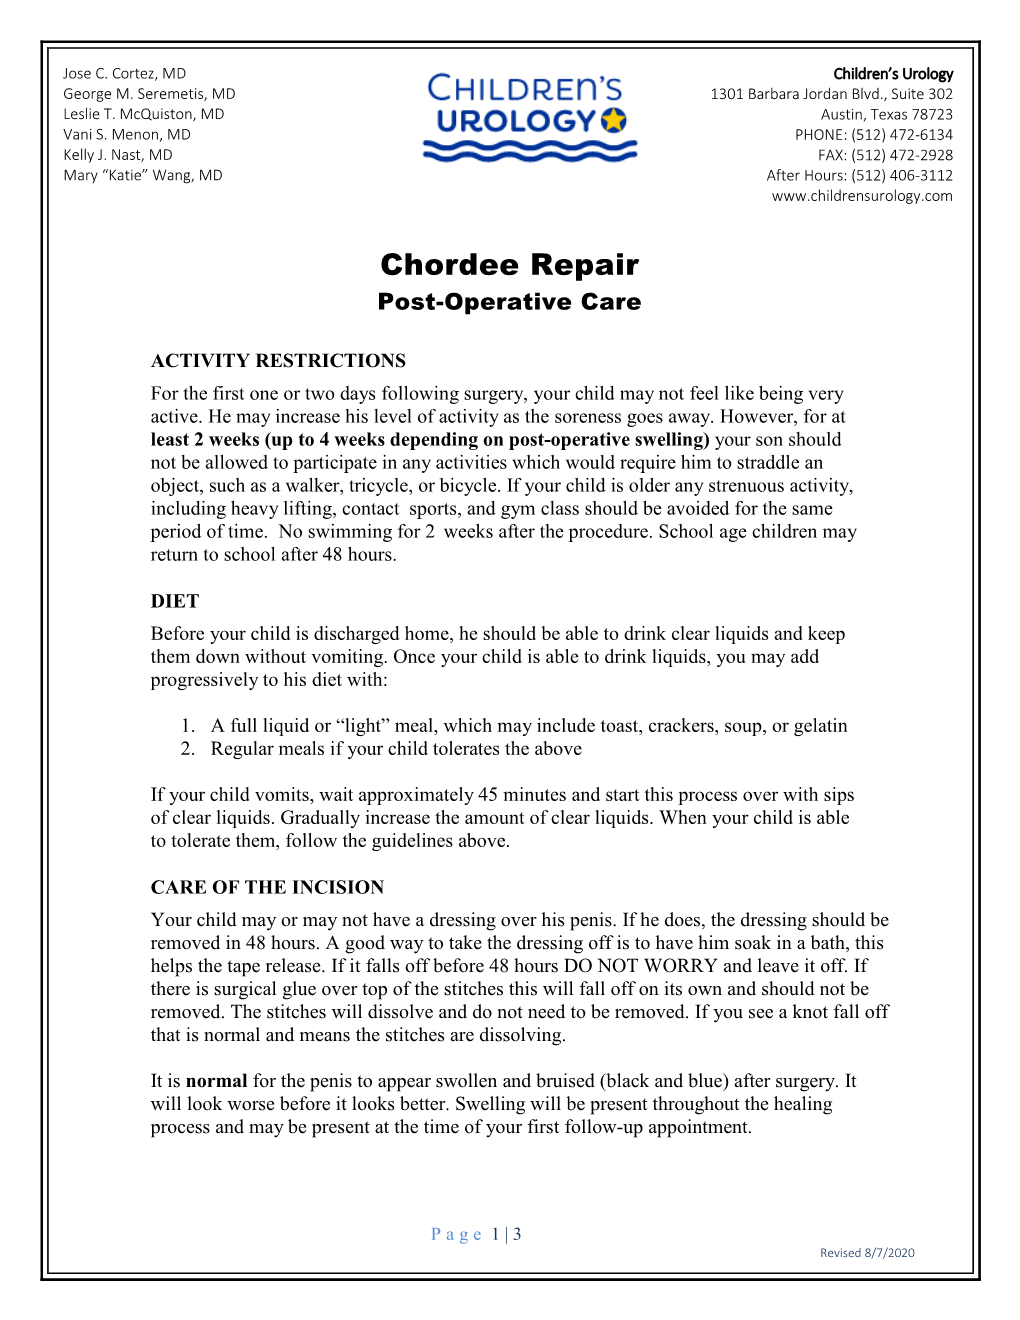 Chordee Repair Post-Operative Care